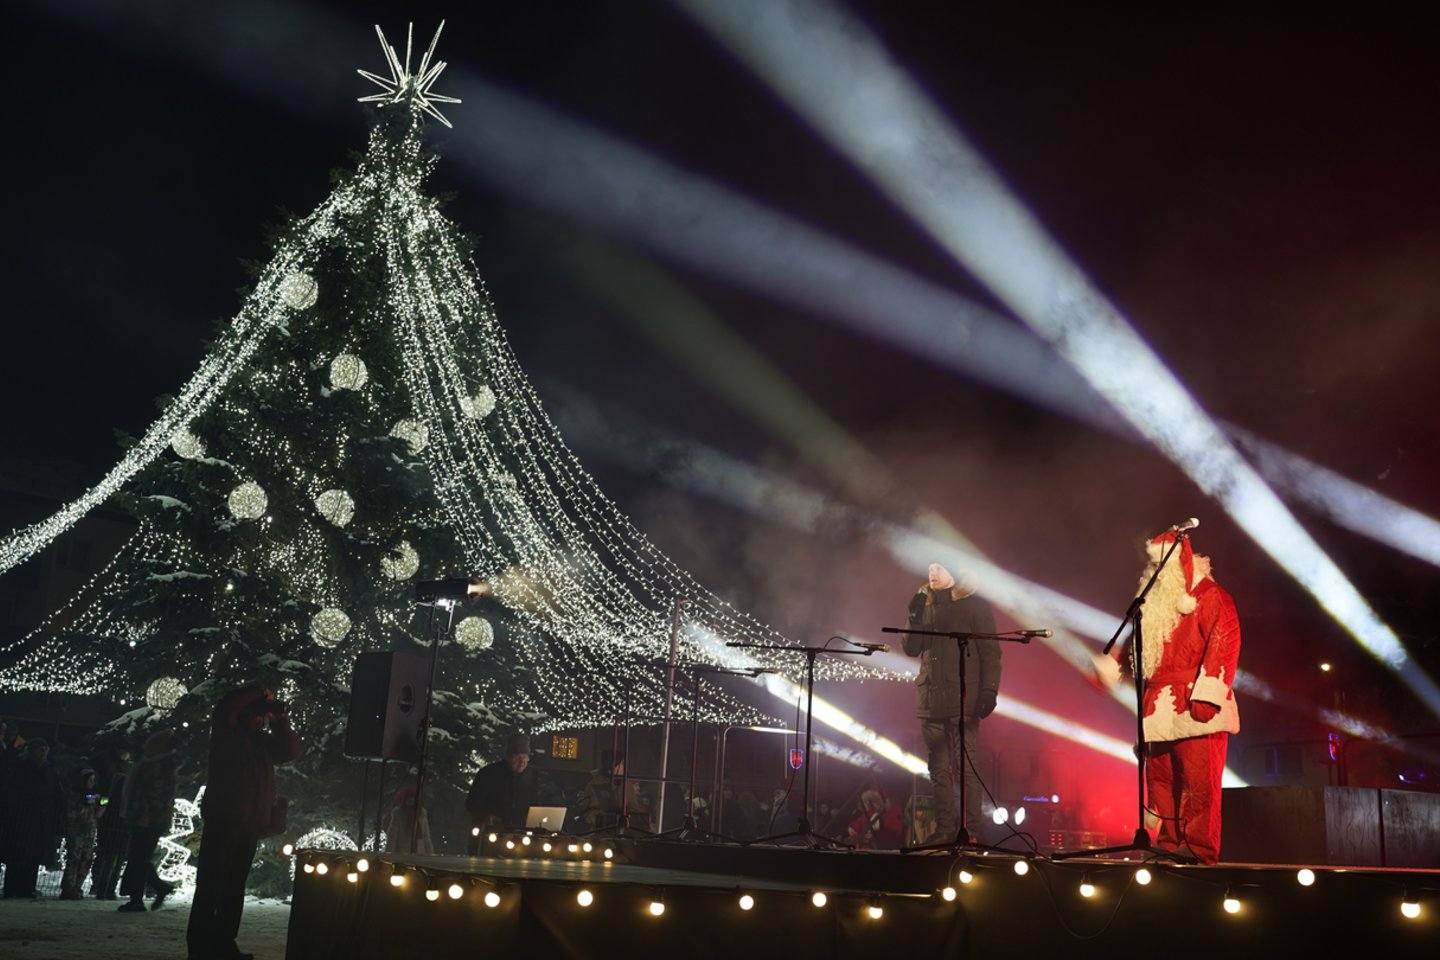 Spaudžiant šaltukui Vilkaviškyje įžiebta išskirtinėmis dekoracijomis padabinta Kalėdų eglė – nenusileidžia kitiems miestams.<br> K.Inkratos nuotr.